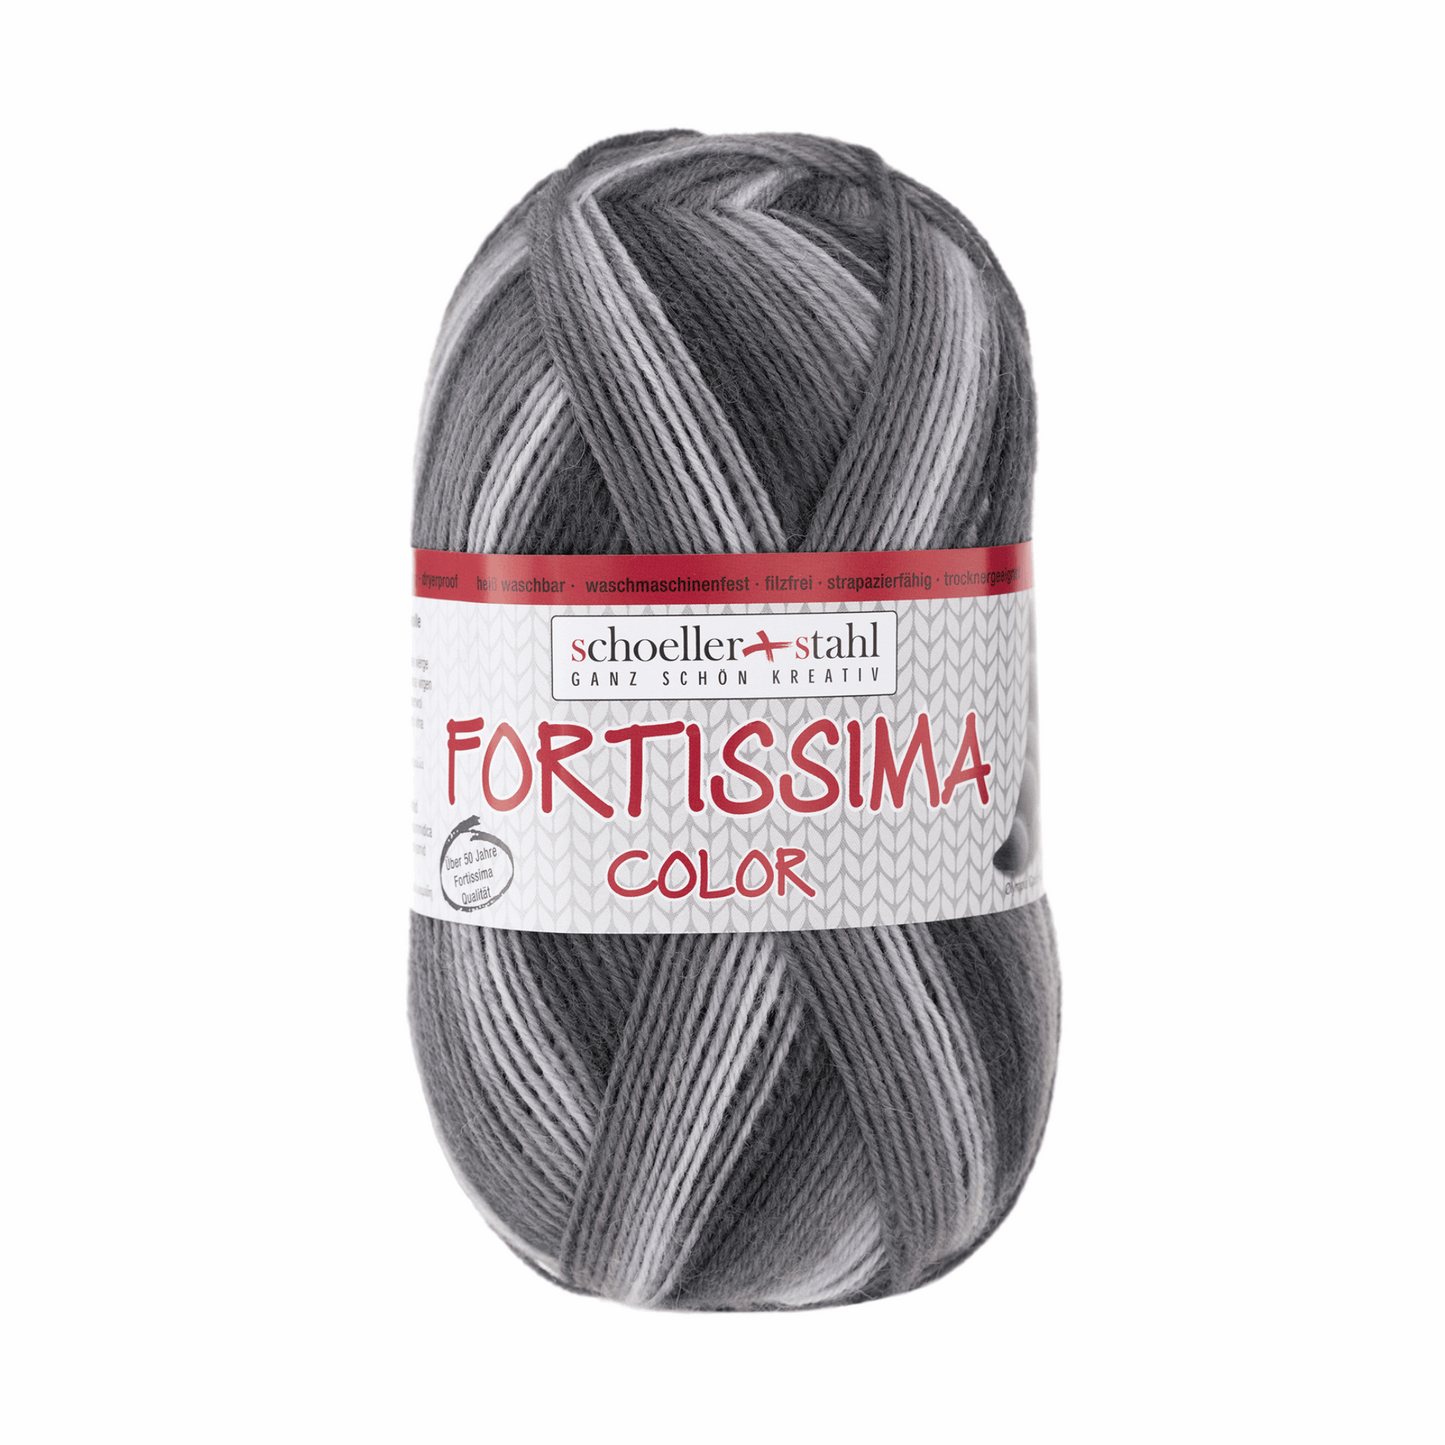 Fortissima socka 4-ply, 90028, color 2434, sapporo